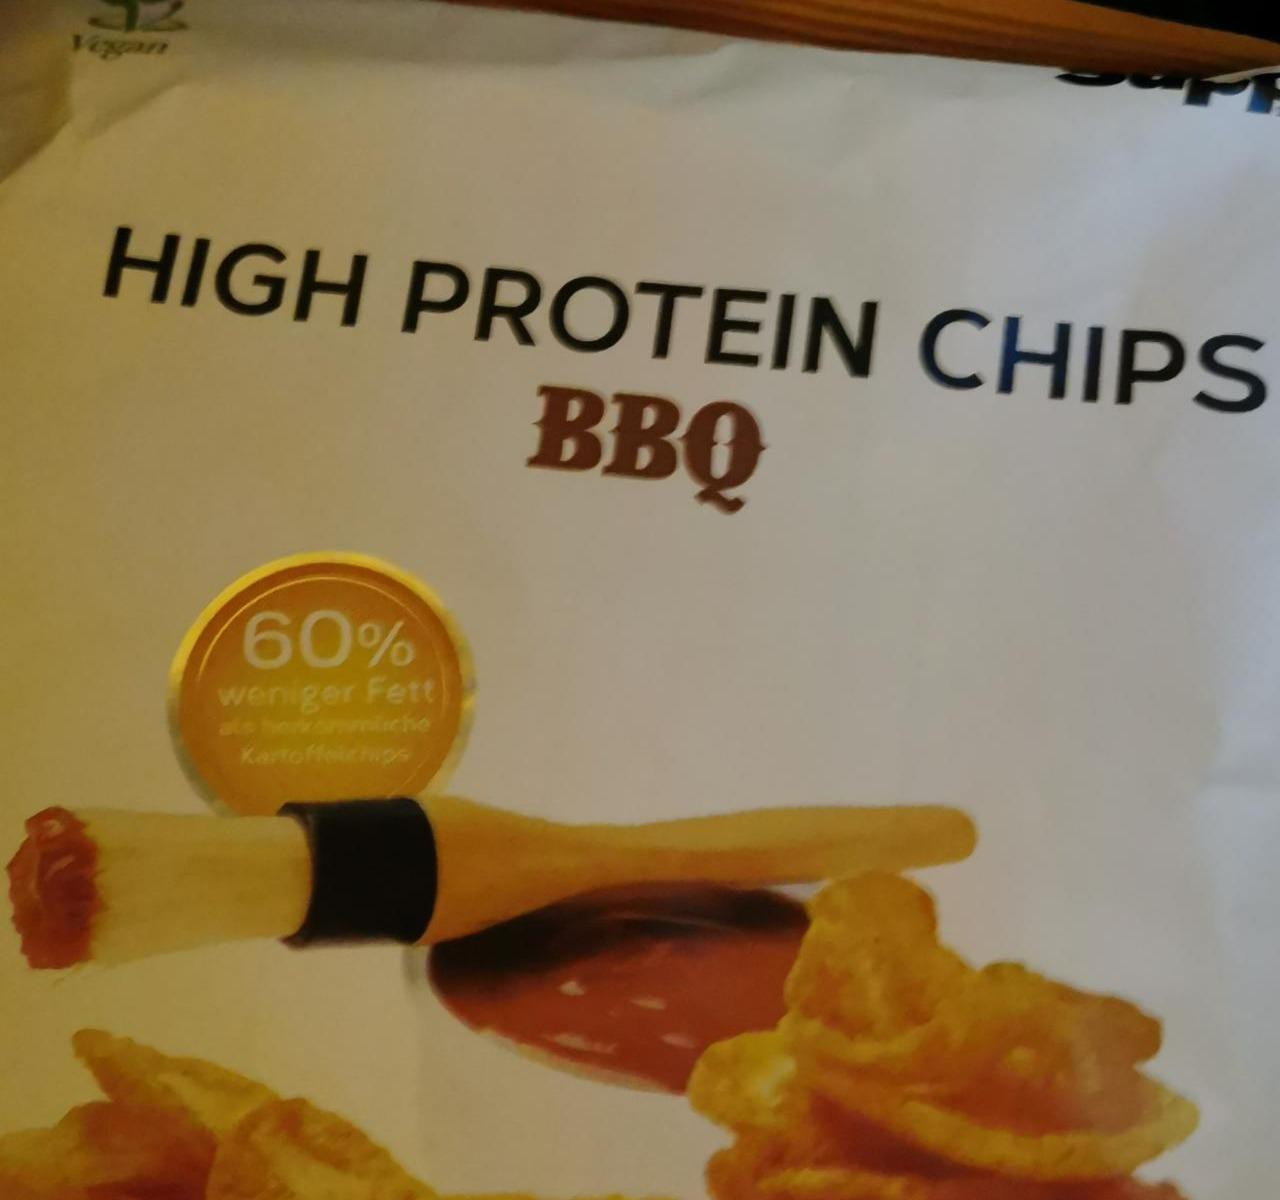 Fotografie - High protein chips BBQ Supplify